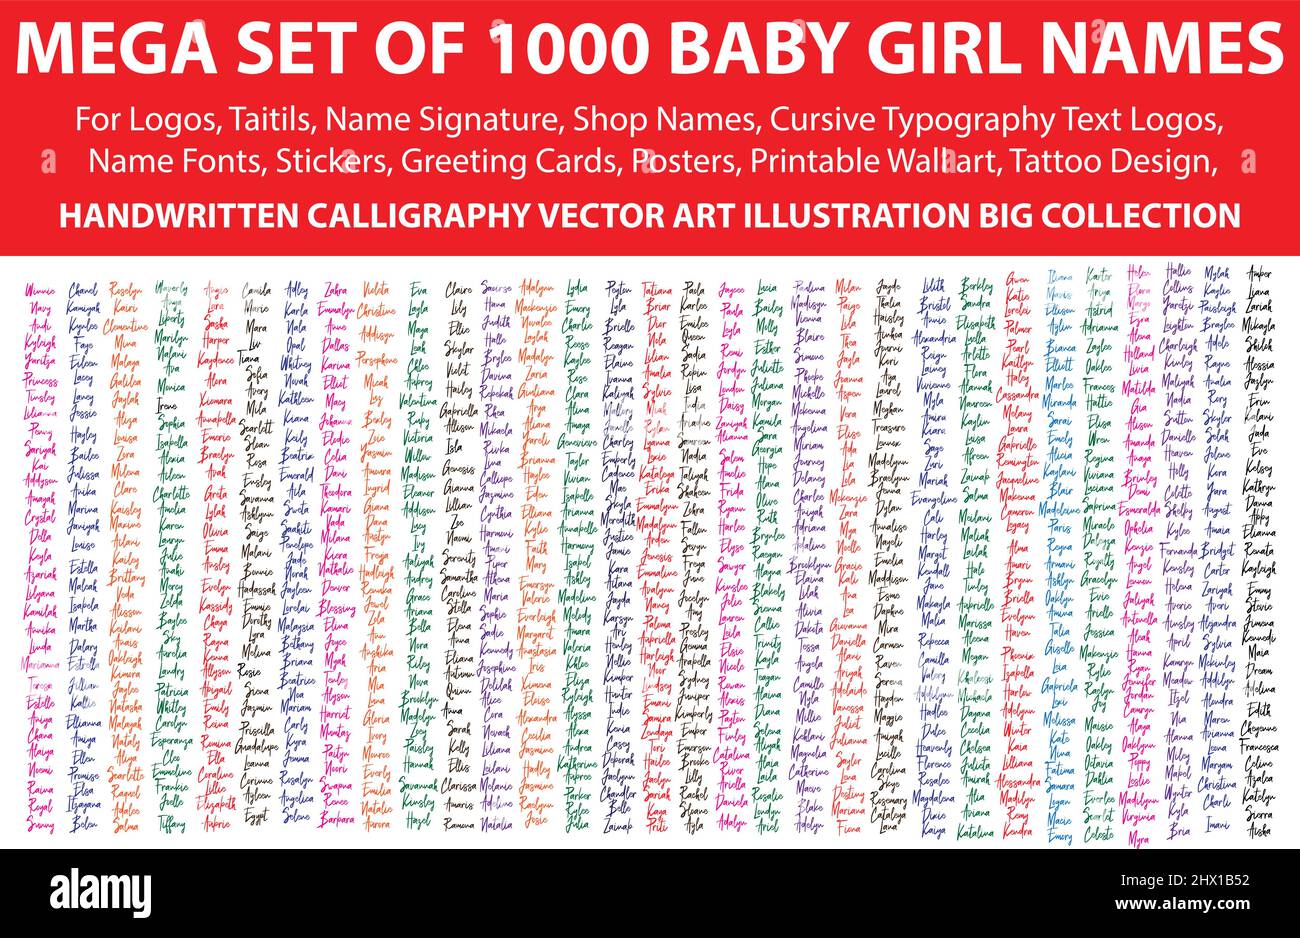 Méga ensemble de 1000 noms de fille de bébé pour Logos, Signature de nom, noms de magasin, polices de nom, typographie cursive Logos de texte, autocollants, calligraphie manuscrite Illustration de Vecteur